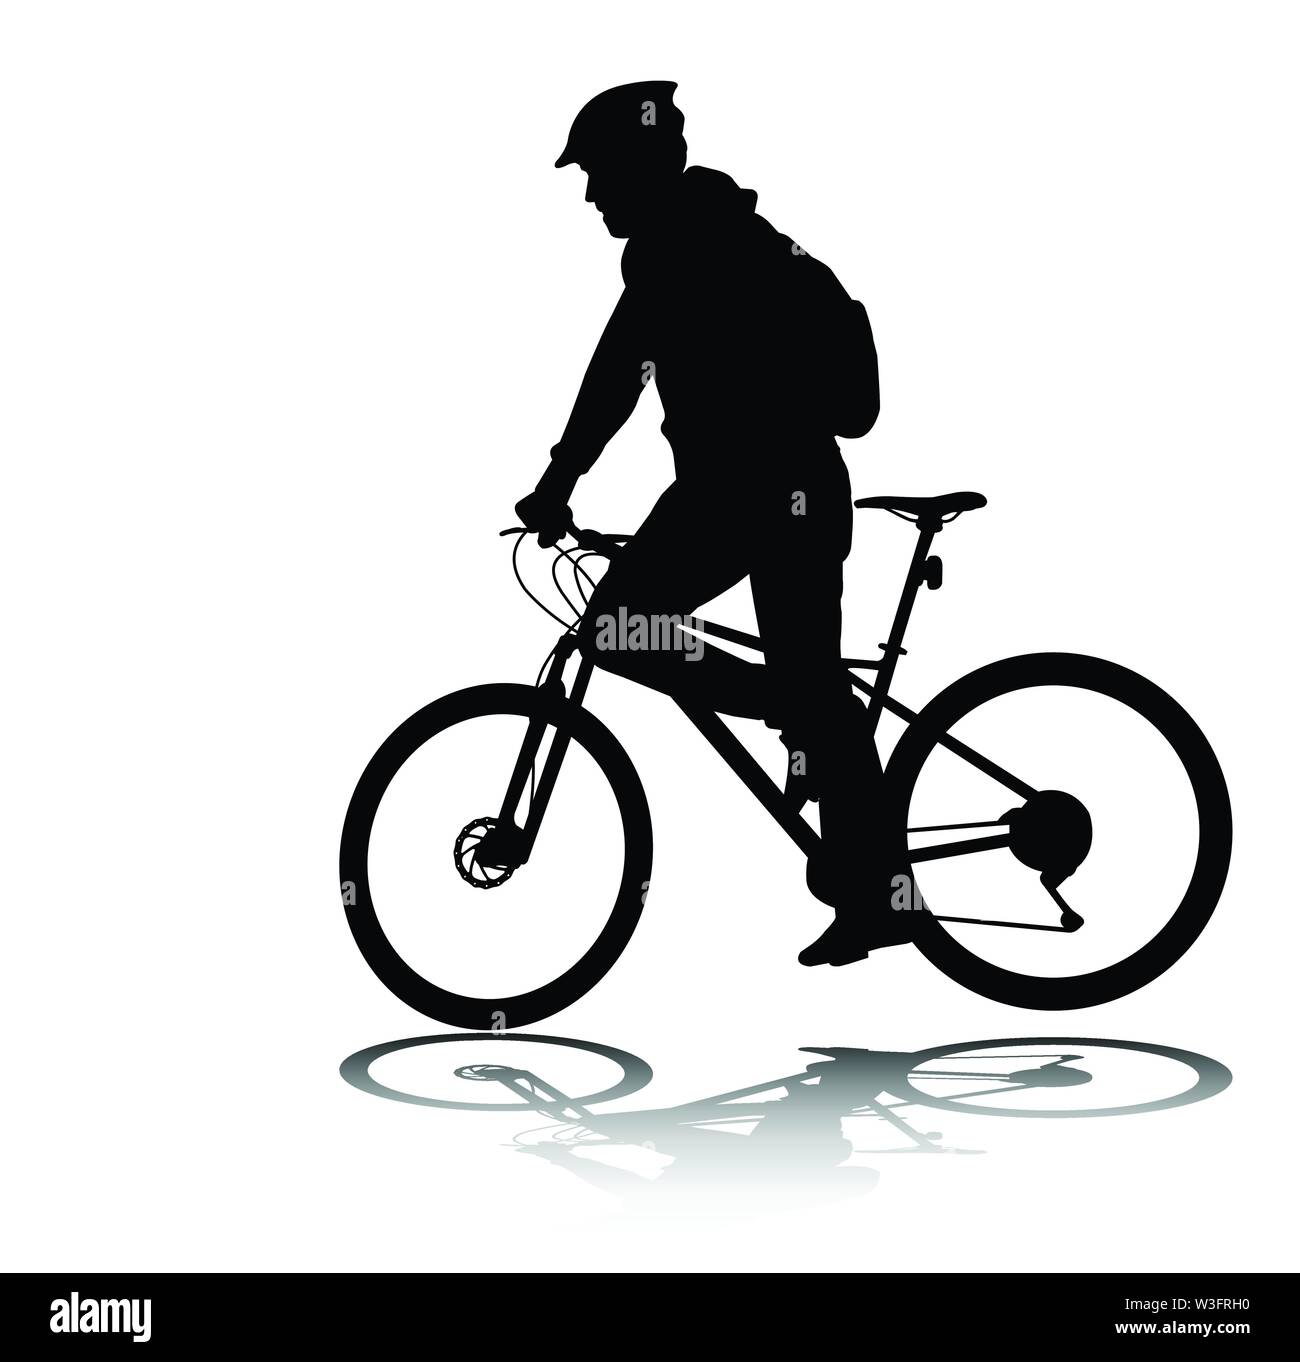 Mann reiten Fahrrad Silhouette-Vektor Stock Vektor